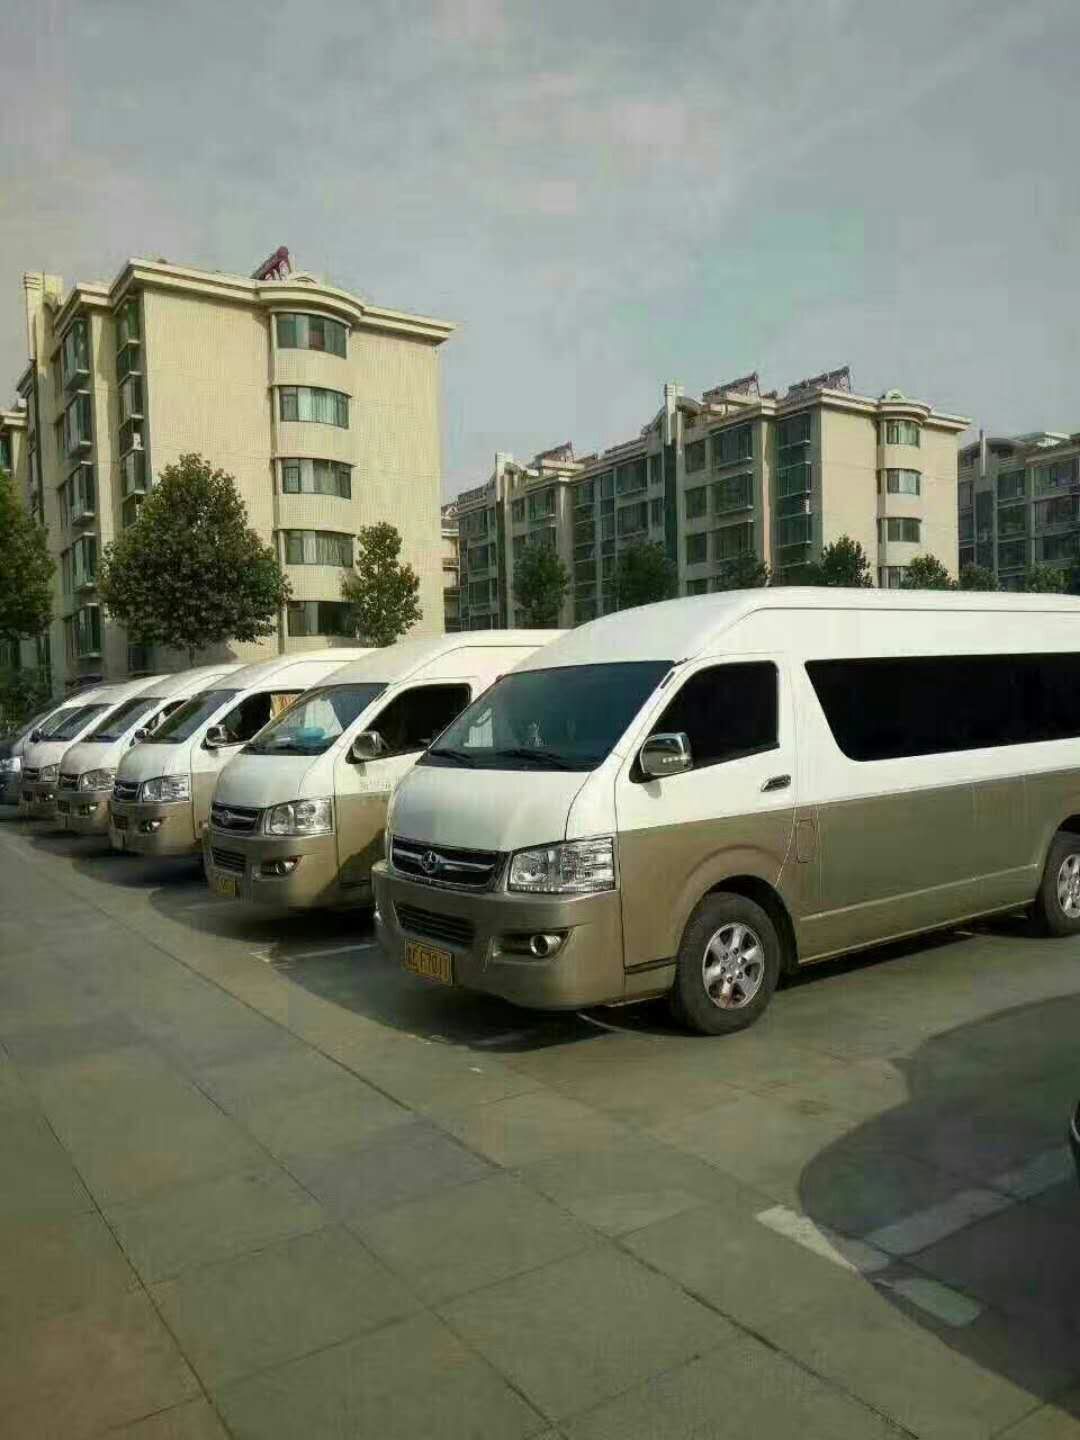 北京旅游包车